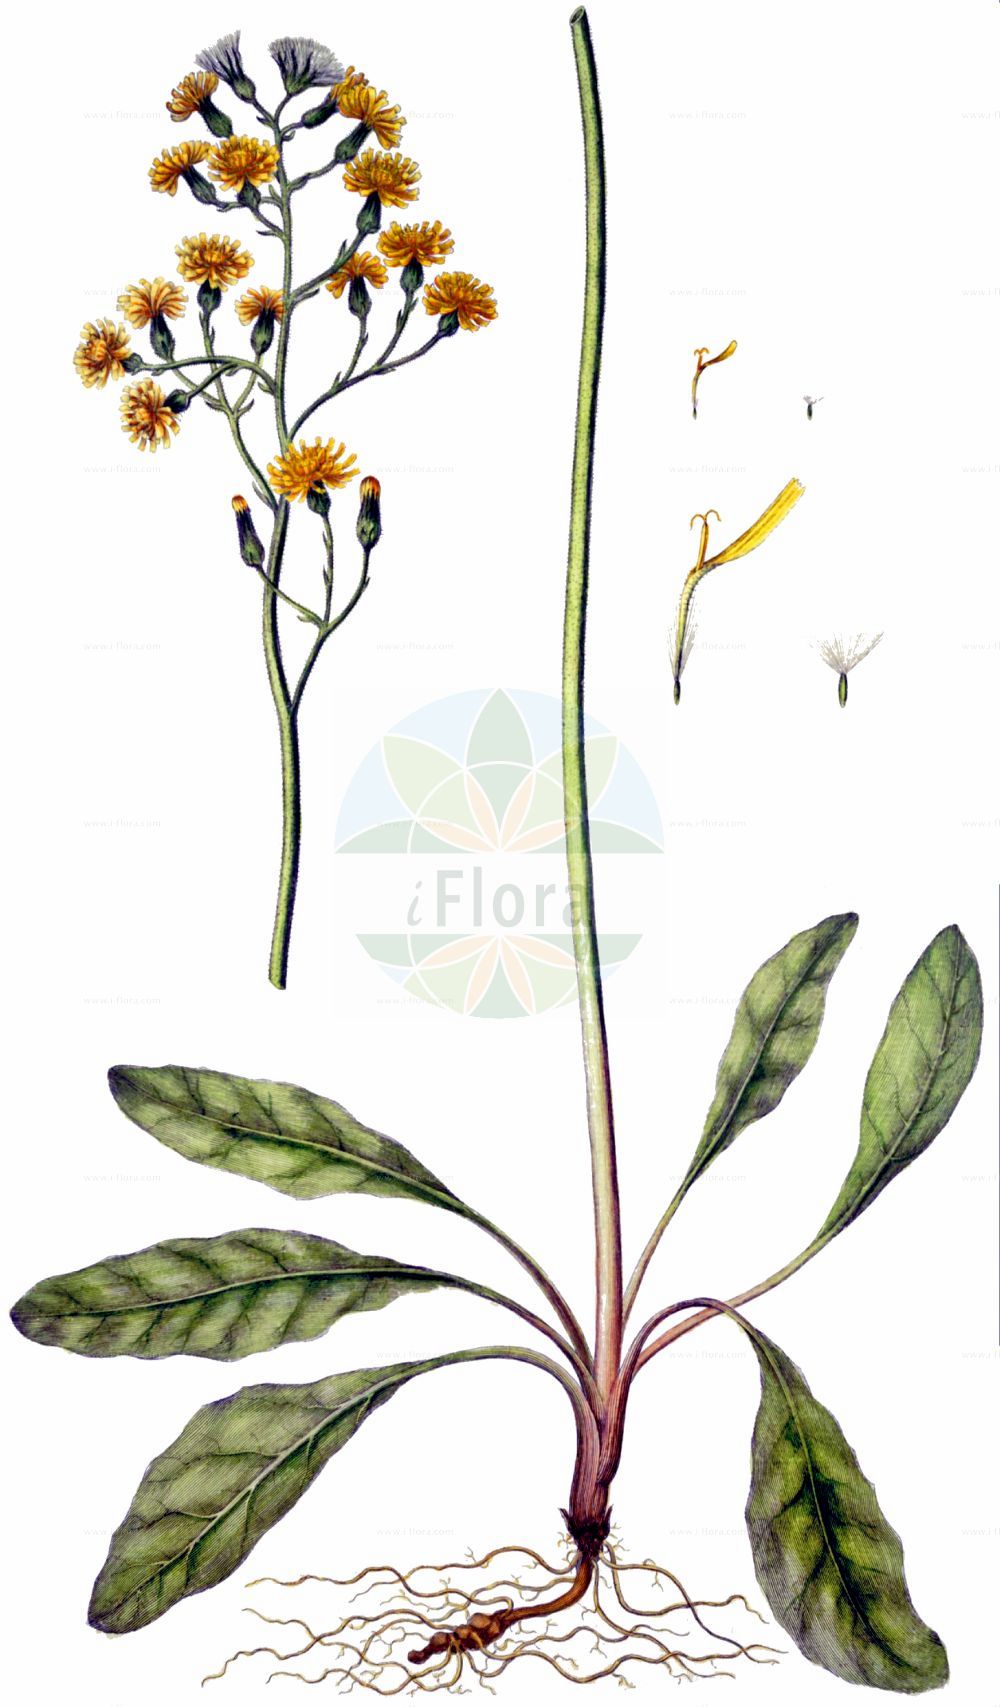 Historische Abbildung von Crepis praemorsa (Abgebissener Pippau - Leafless Hawk's-beard). Das Bild zeigt Blatt, Bluete, Frucht und Same. ---- Historical Drawing of Crepis praemorsa (Abgebissener Pippau - Leafless Hawk's-beard). The image is showing leaf, flower, fruit and seed.(Crepis praemorsa,Abgebissener Pippau,Leafless Hawk's-beard,Crepis praemorsa,Hieracium praemorsum,Abgebissener Pippau,Abbiss-Pippau,Leafless Hawk's-beard,Pink Hawksbeard,Crepis,Pippau,Hawk's-beard,Asteraceae,Korbblütengewächse,Daisy family,Blatt,Bluete,Frucht,Same,leaf,flower,fruit,seed,Oeder (1761-1883))